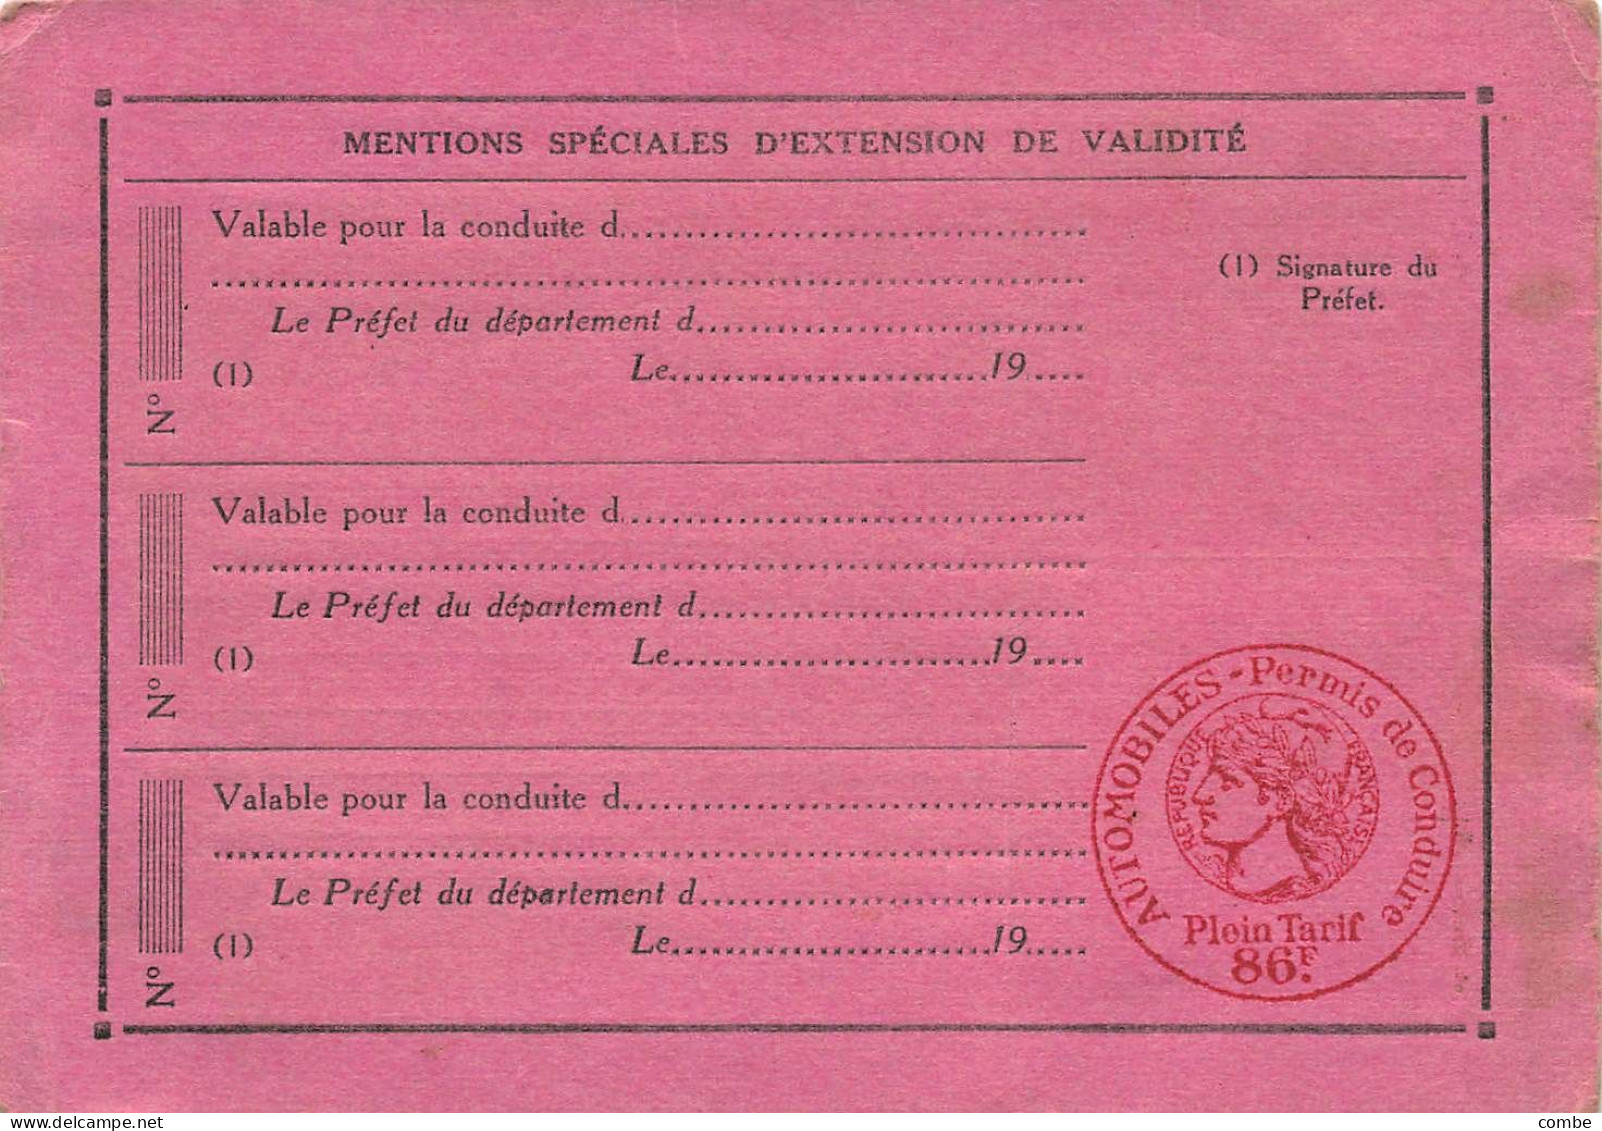 PERMIS DE CONDUIRE LES AUTOMOBILES.  YONNE. 1940 - Historical Documents